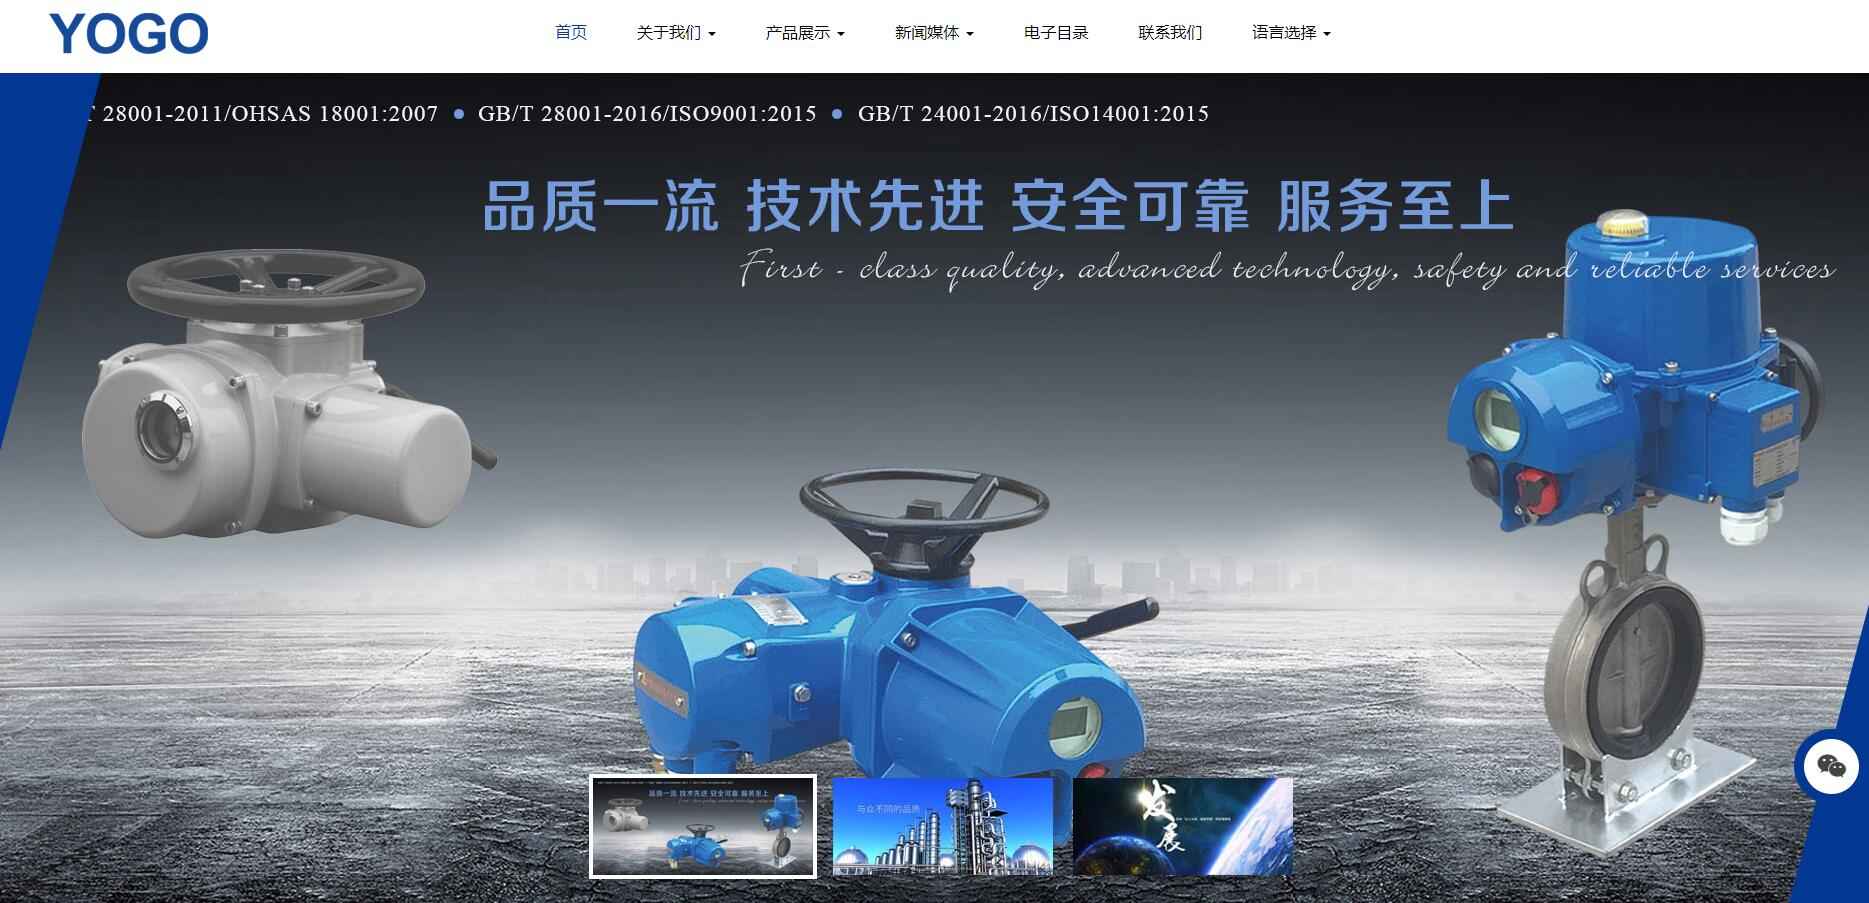 上海禹格工业设备